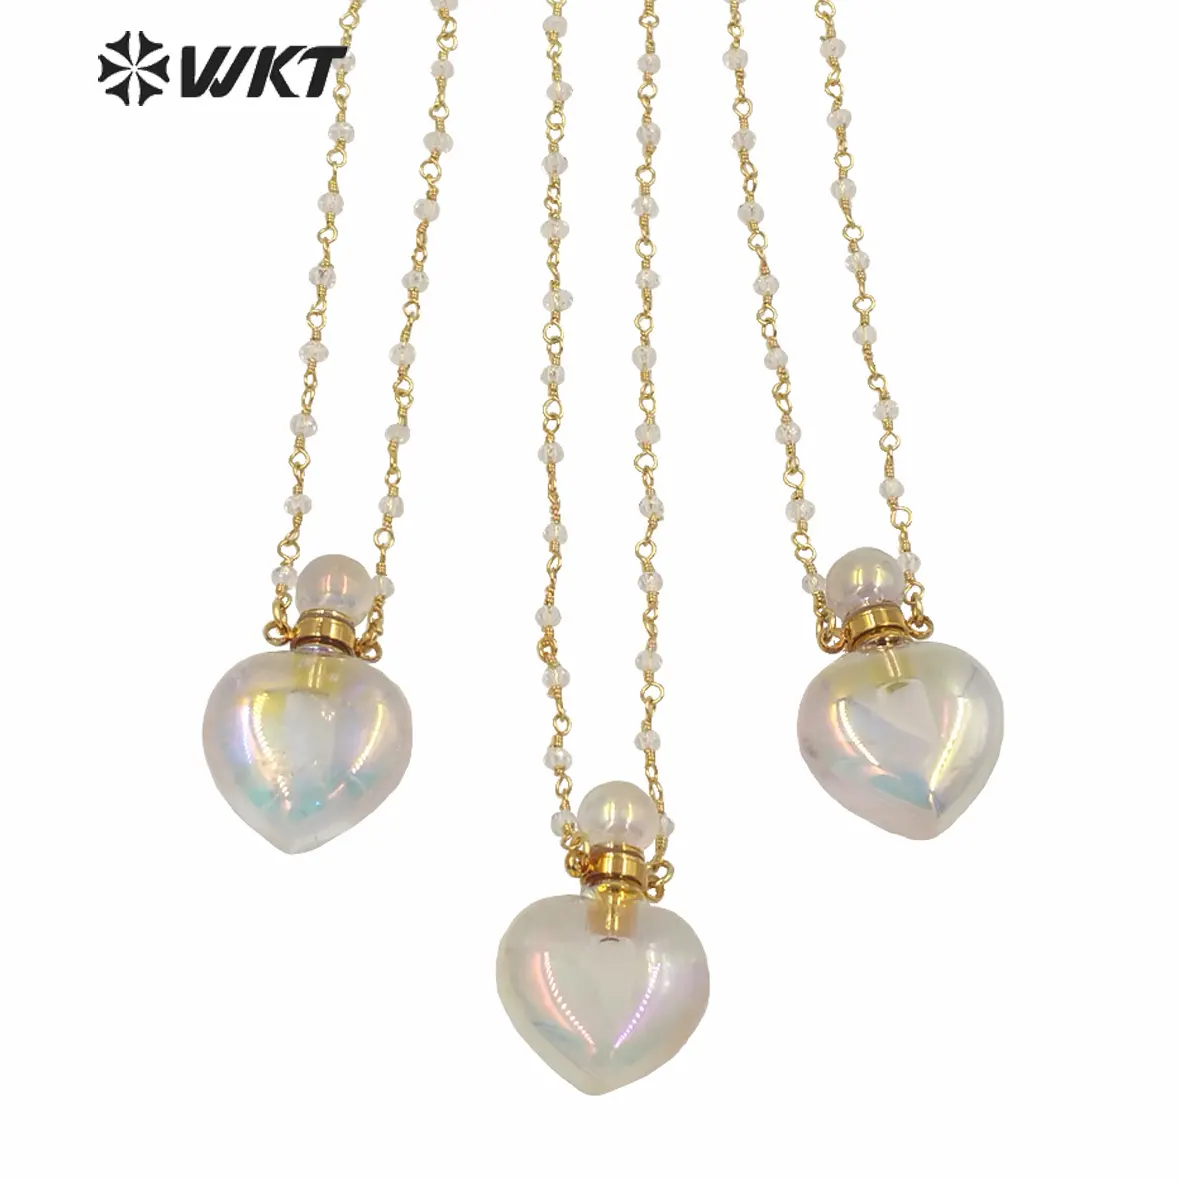 WT-N1237 WKT İnanılmaz Aura altın elektroliz kristal kuvars kalp şekli parfüm şişesi kolye Aura taş kristal kolye